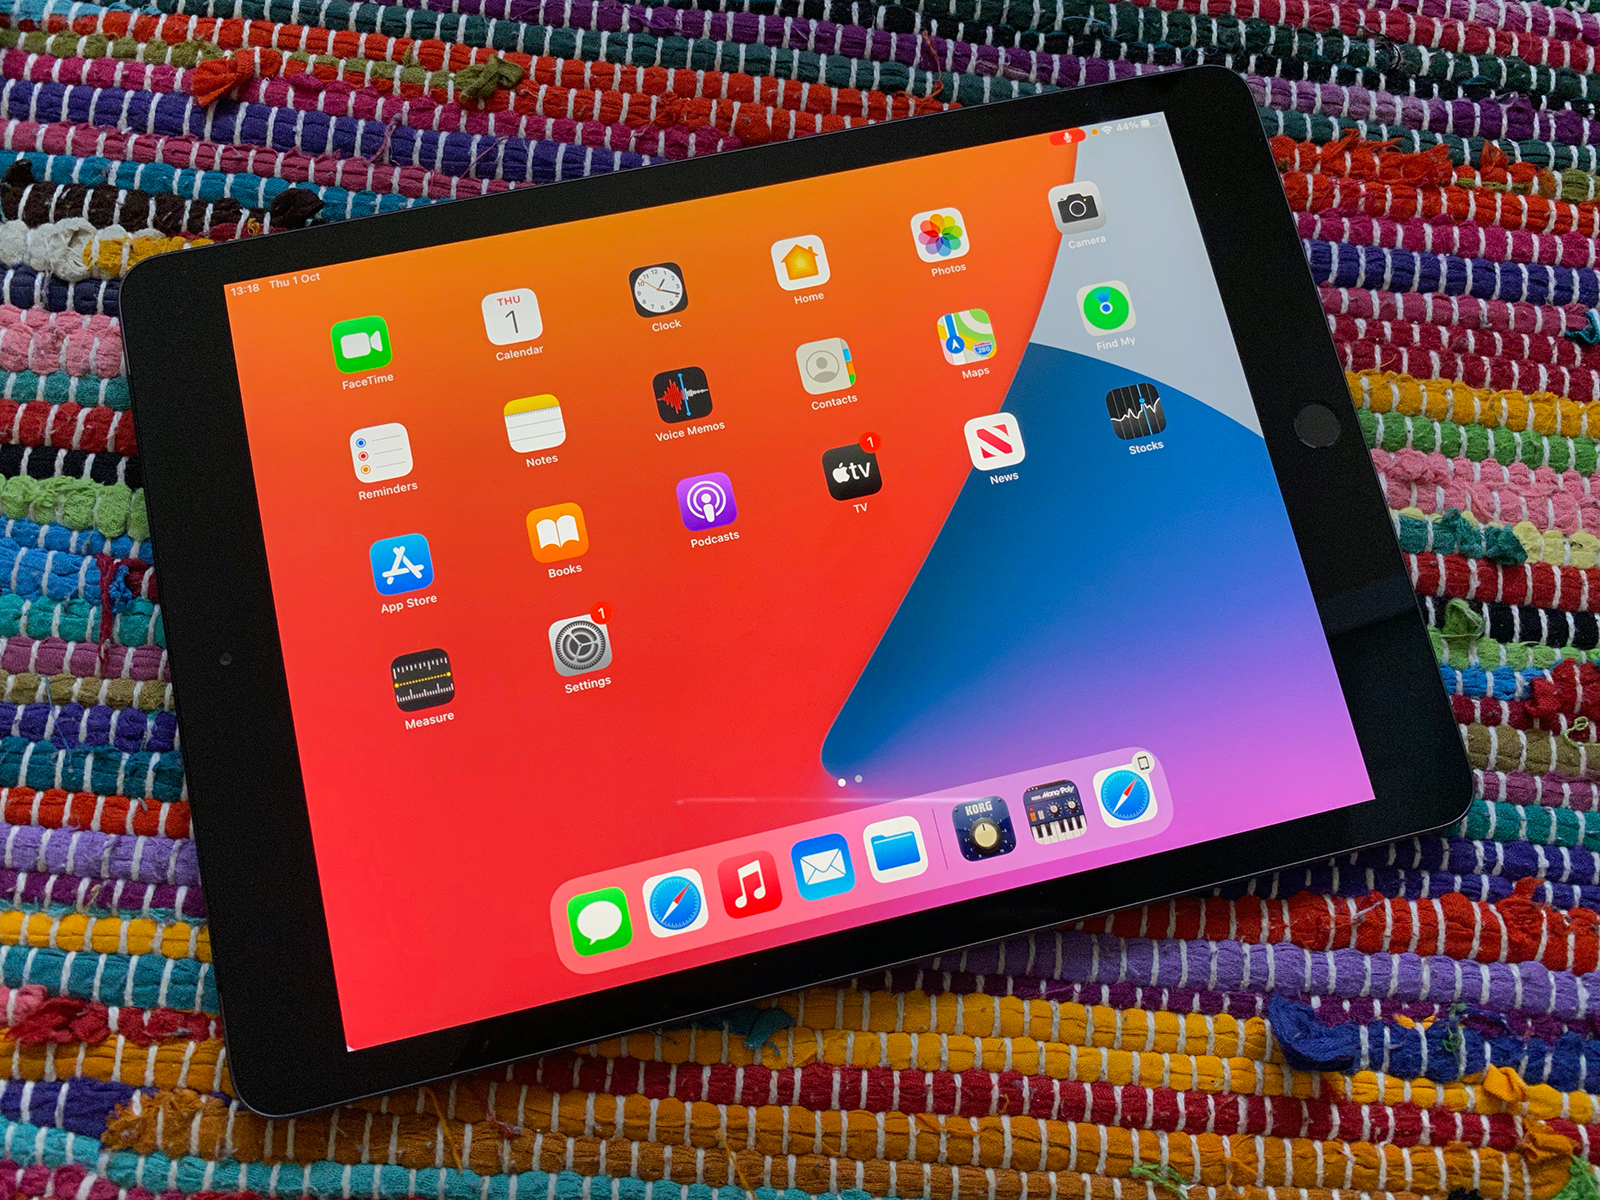 Sở hữu cho mình một chiếc iPad 8th generation mới nhất, bạn sẽ được trải nghiệm màn hình rực rỡ, hiệu năng đáng tin cậy và tính năng tuyệt vời của chiếc máy tính bảng. Bạn có muốn xem ảnh về chiếc iPad 8th generation này không?